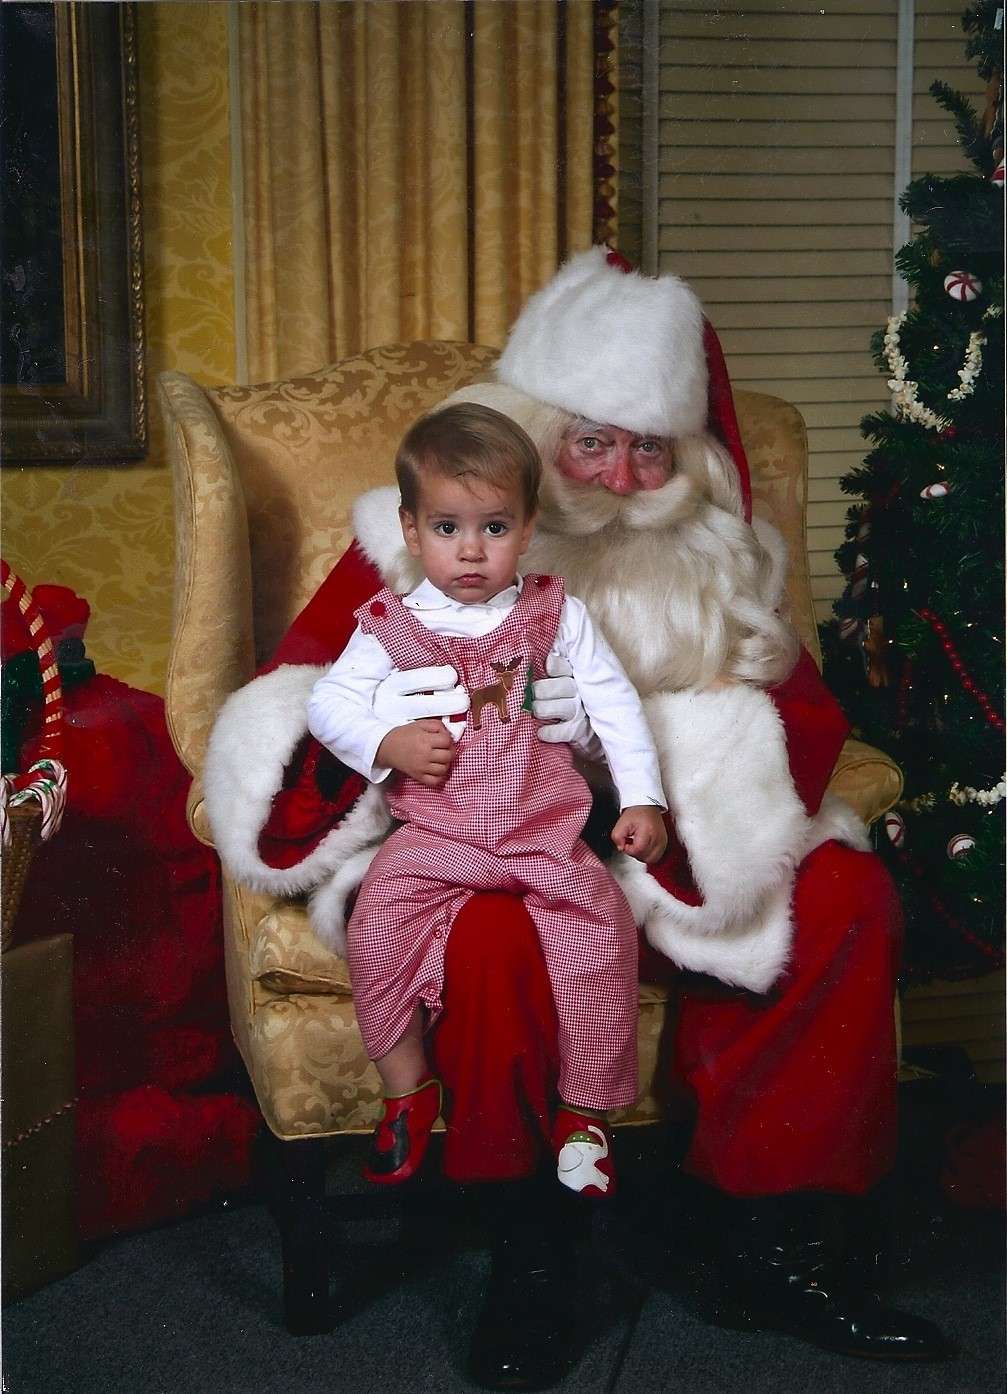 Bambino titubante con Santa Claus